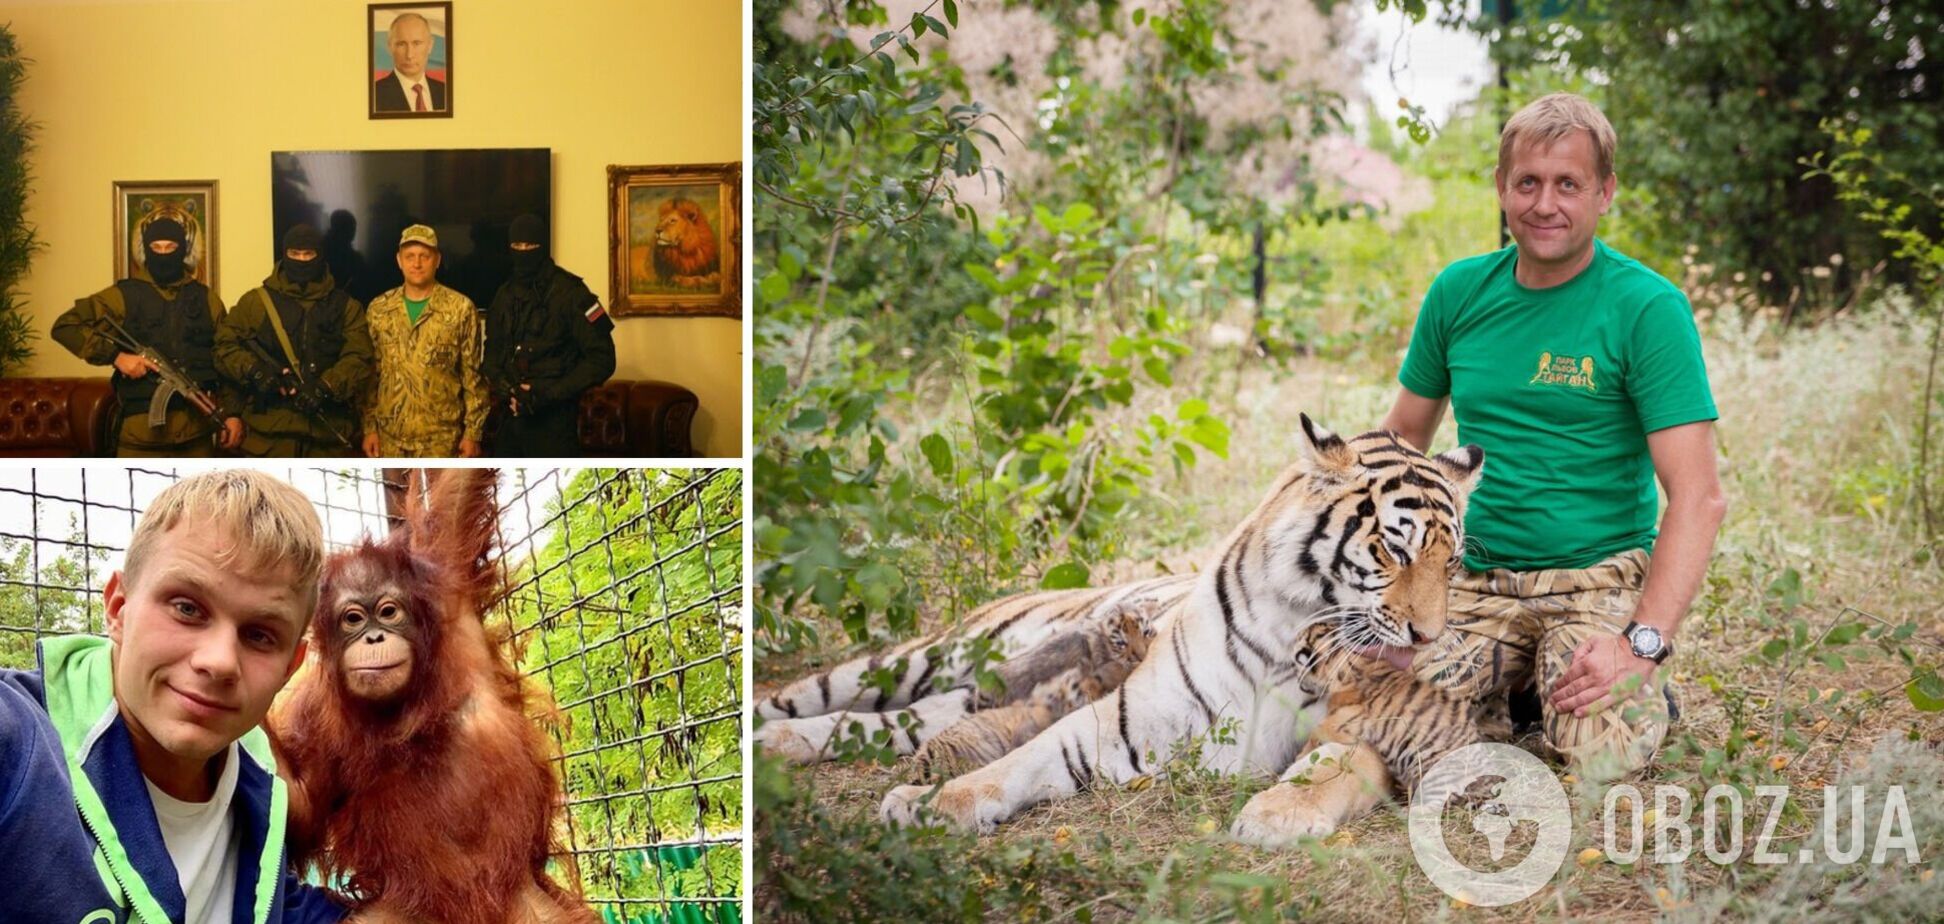 Владельца ялтинского зоопарка Зубкова отправили в СИЗО: судьба семьи предателя Украины